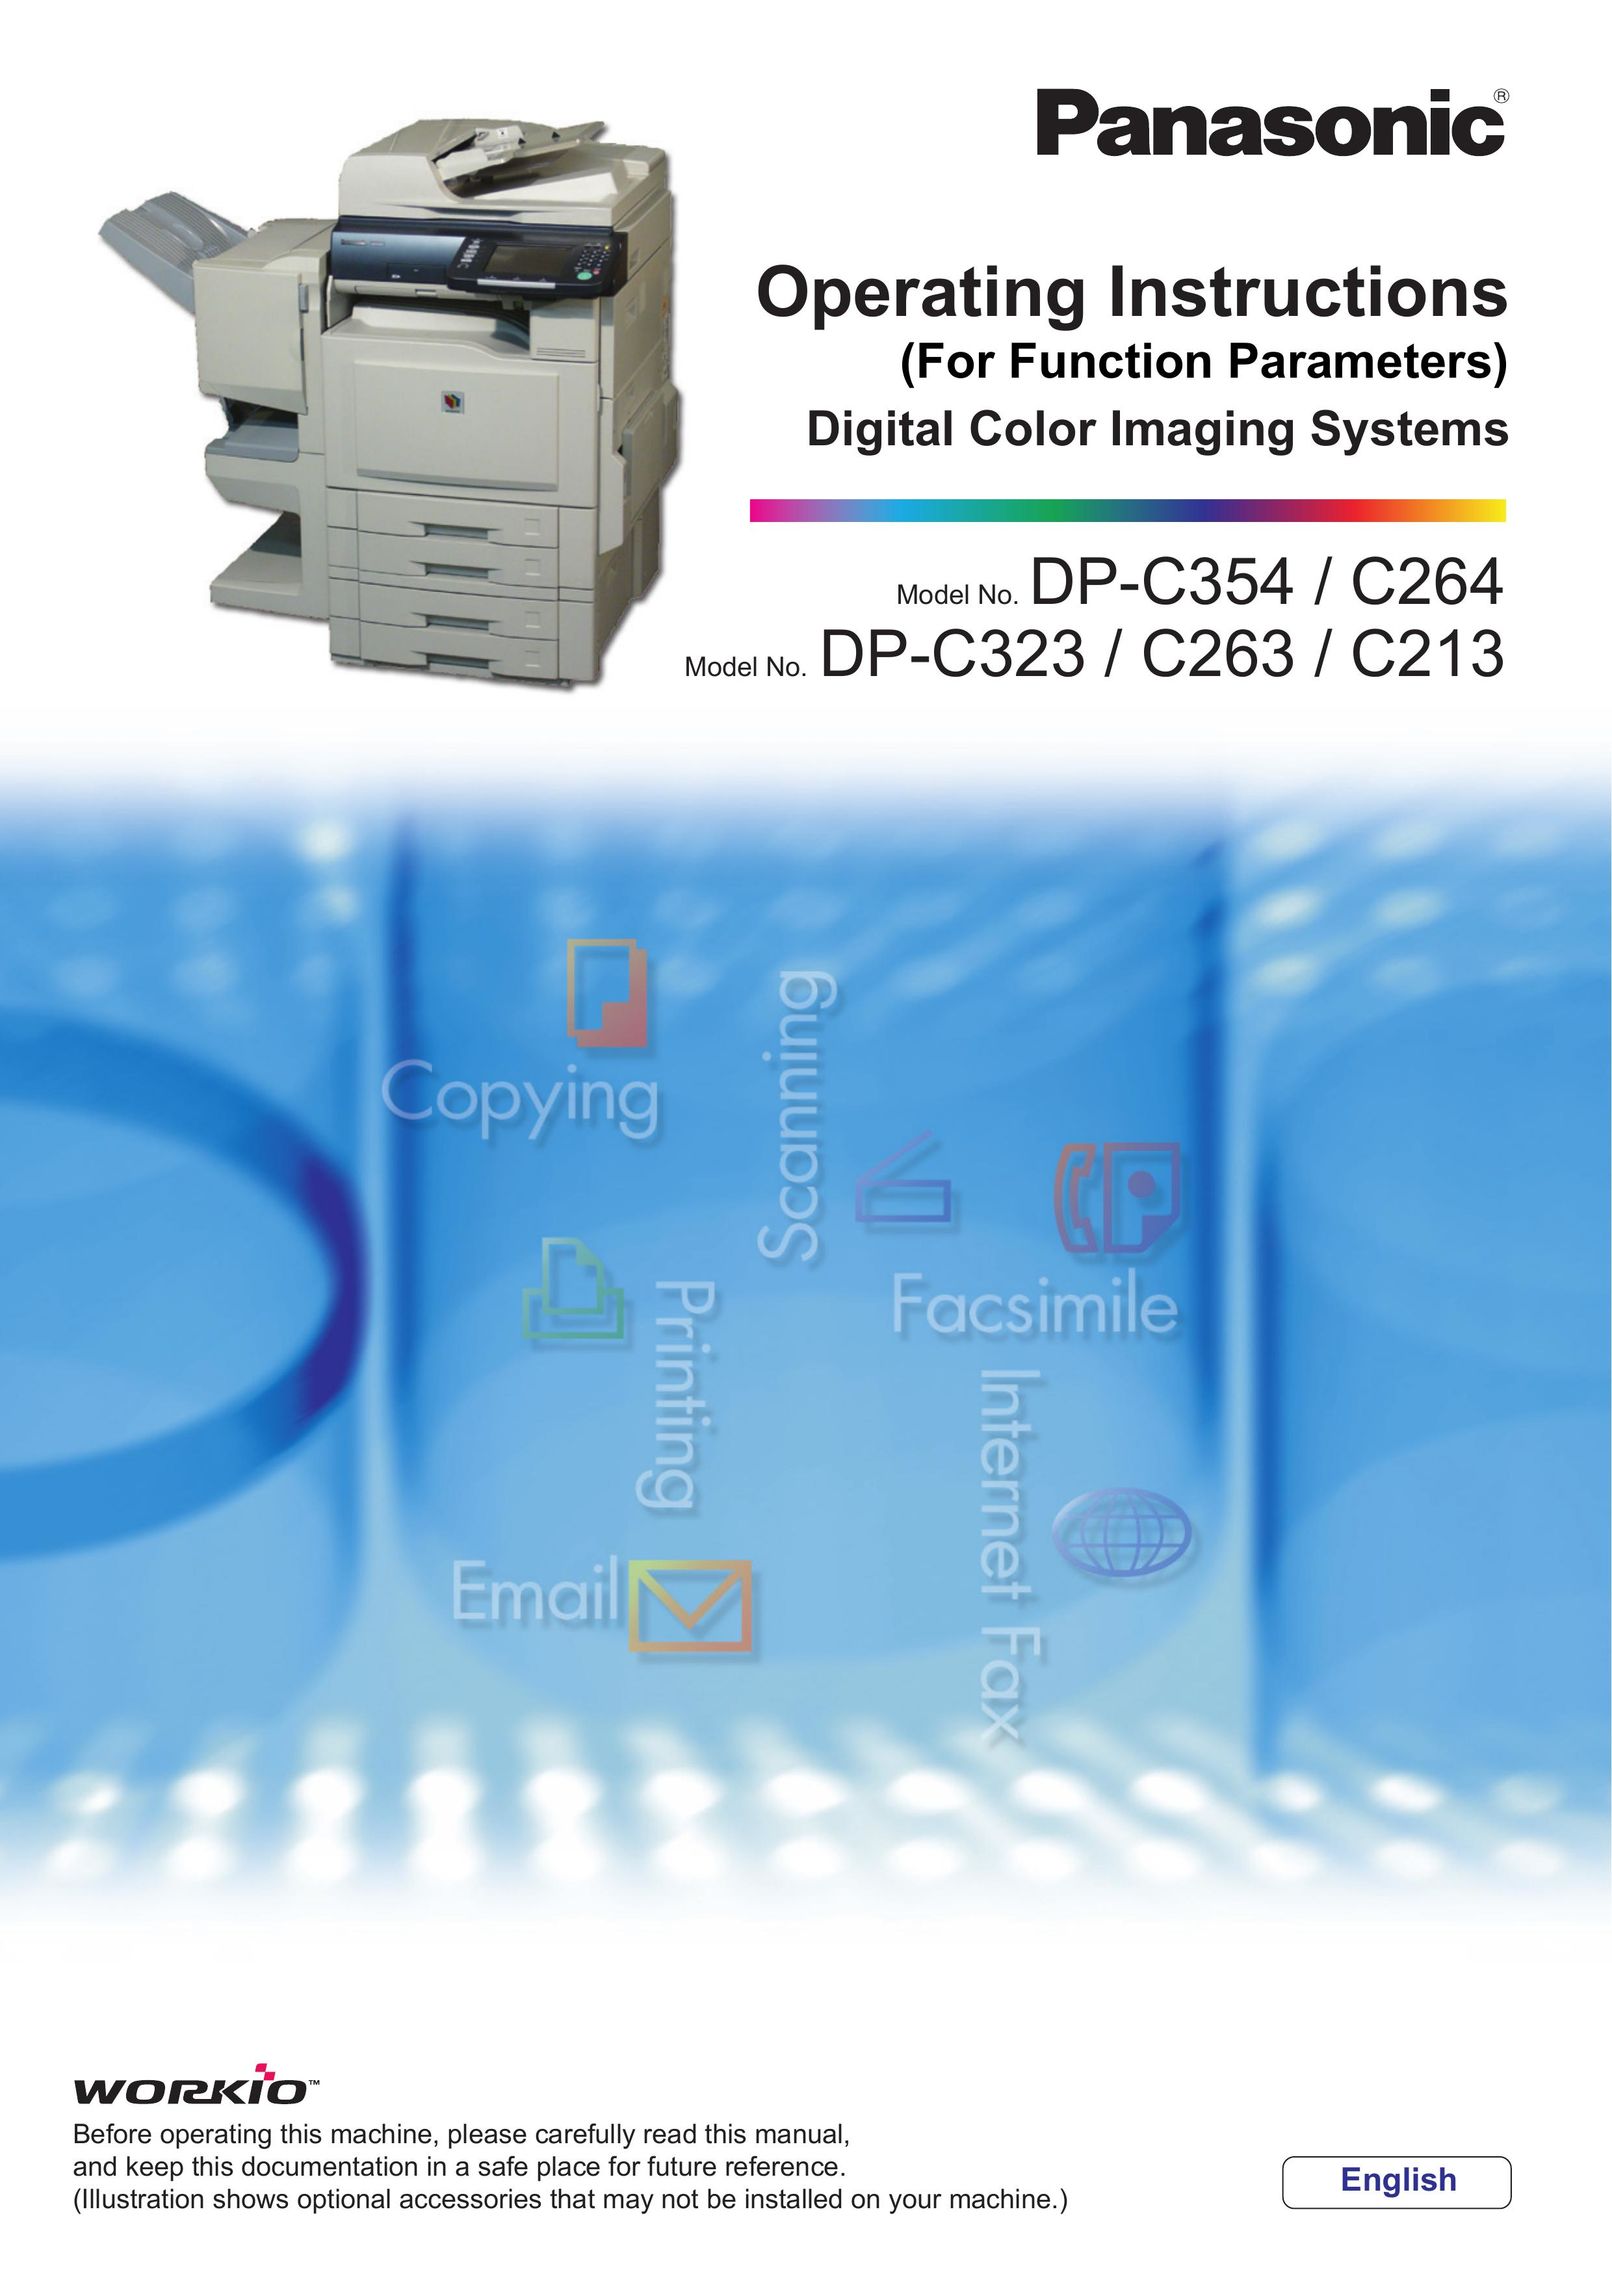 Panasonic DP-C264 Printer User Manual